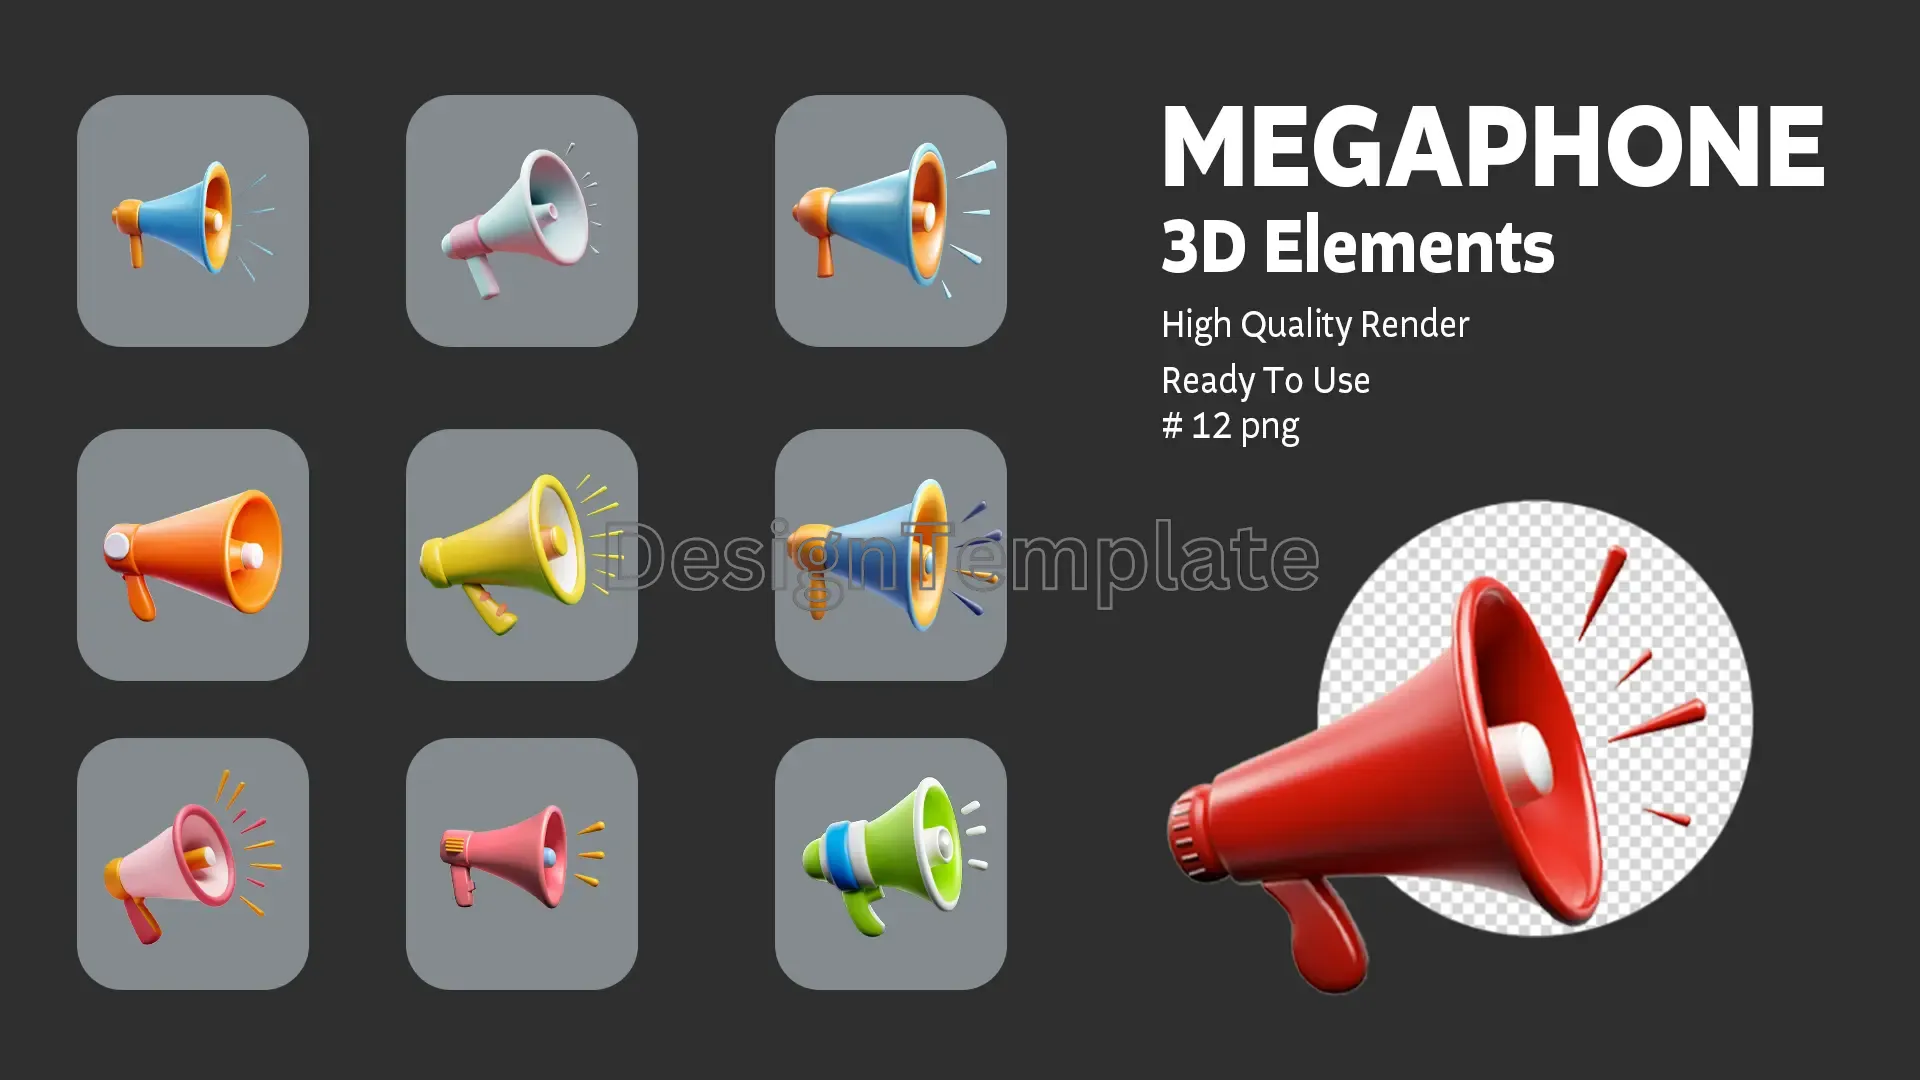 Voice Amplified Megaphone 3D Elements Collection